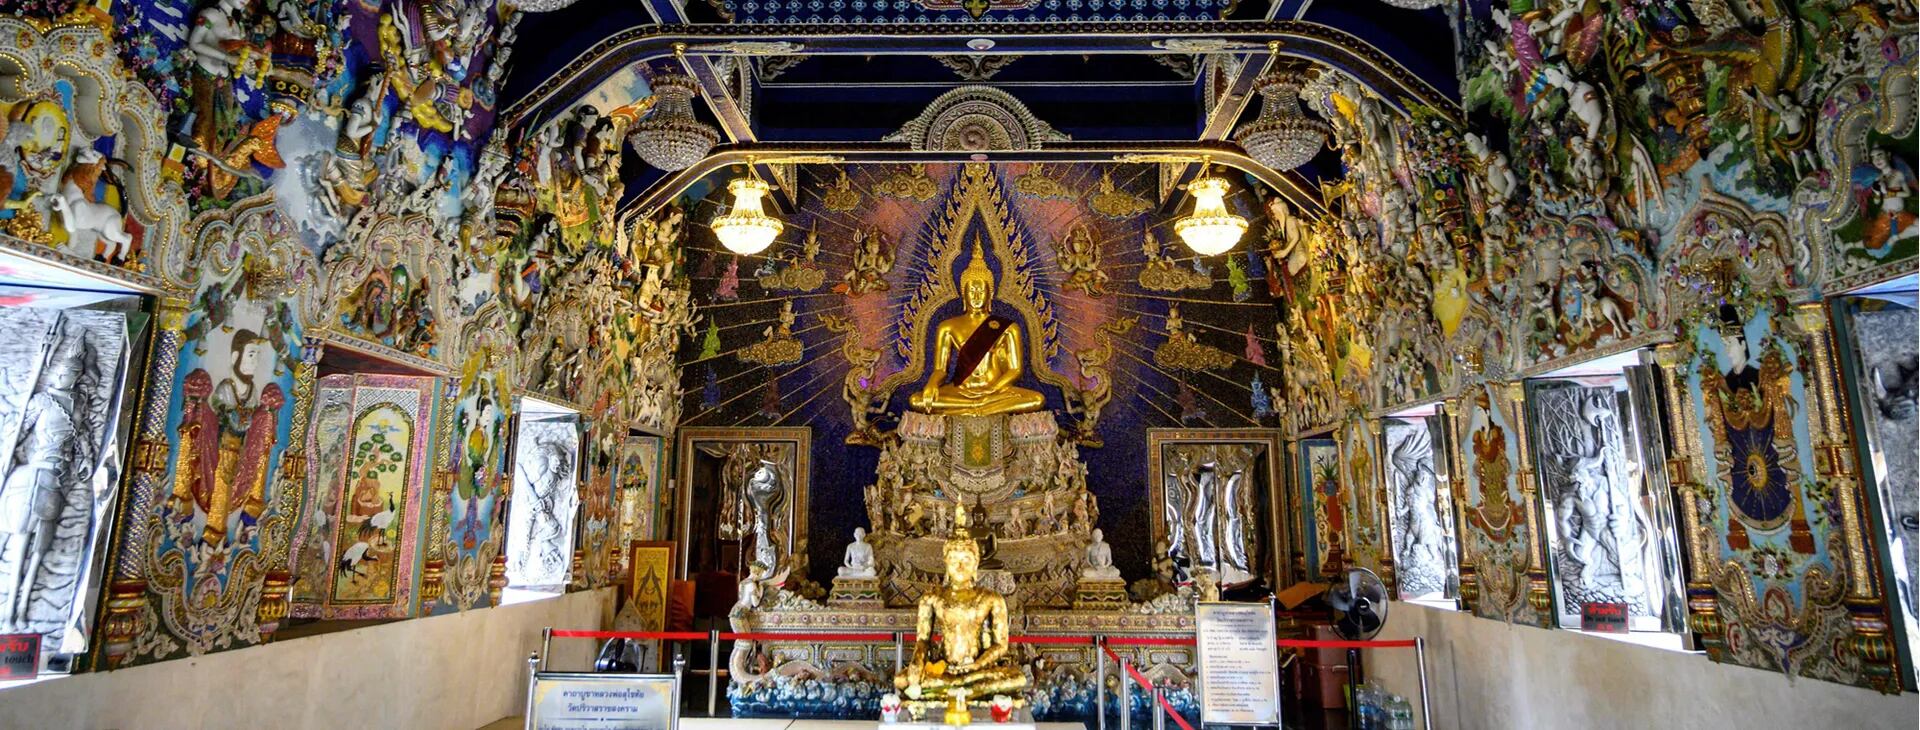 De David Beckham al Che Guevara, Wat Pariwat, el templo budista más moderno de Tailandia